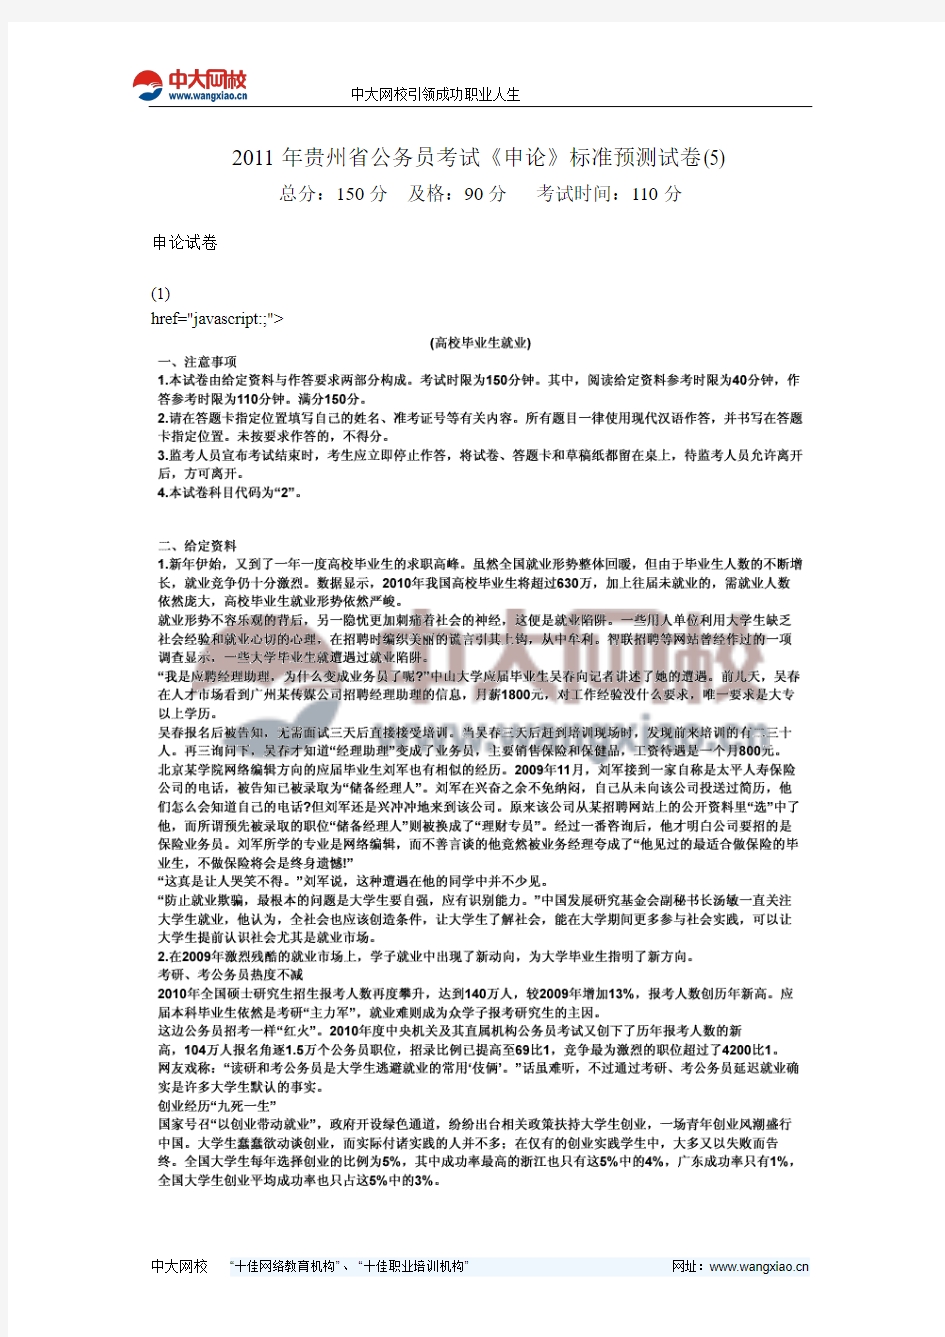 2011年贵州省公务员考试《申论》标准预测试卷(5)-中大网校